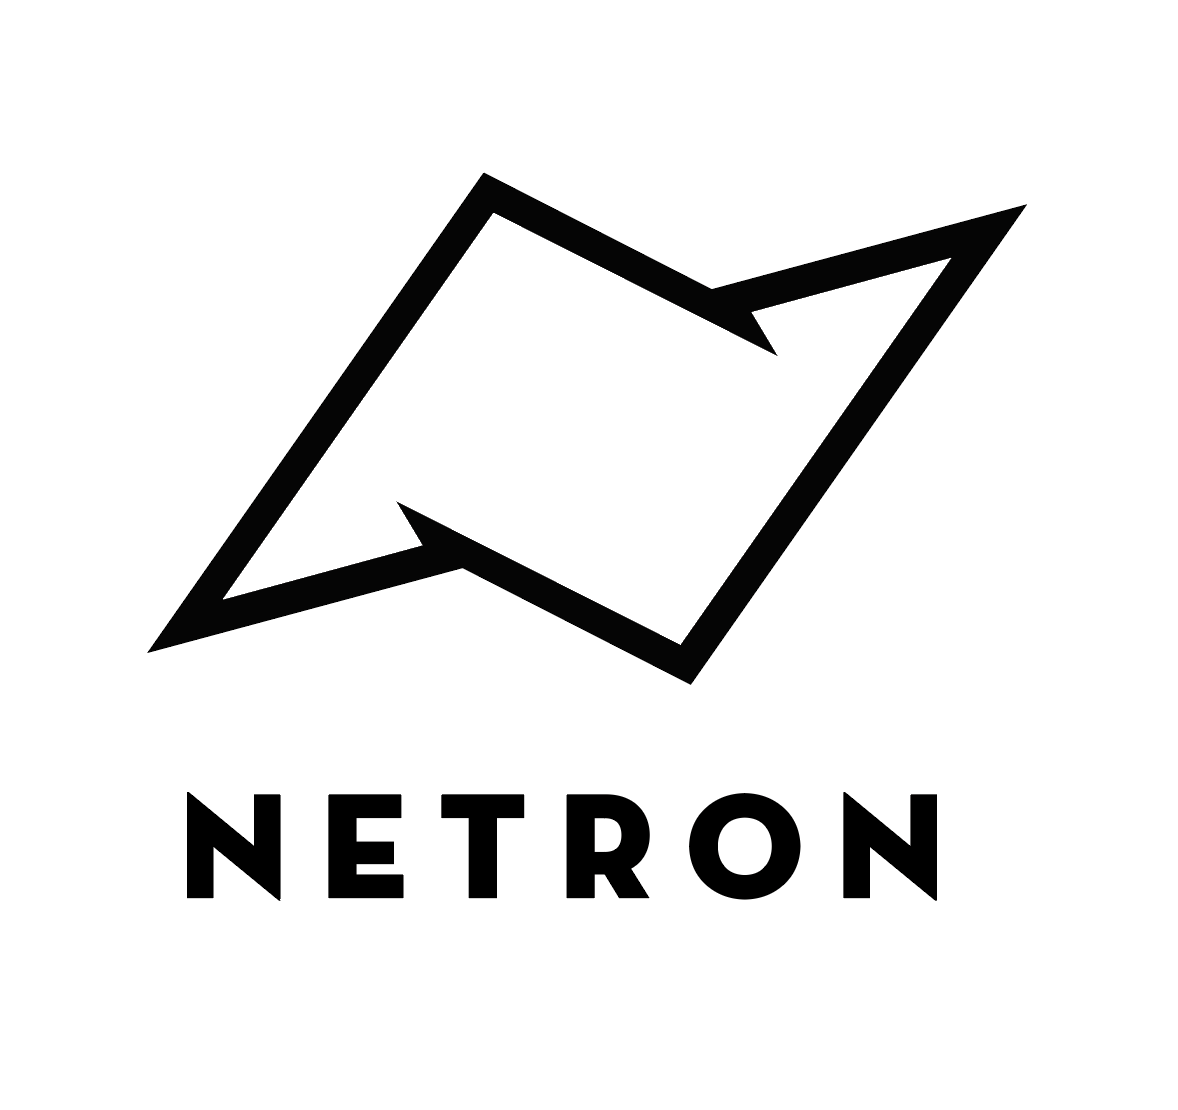 Netron Logo